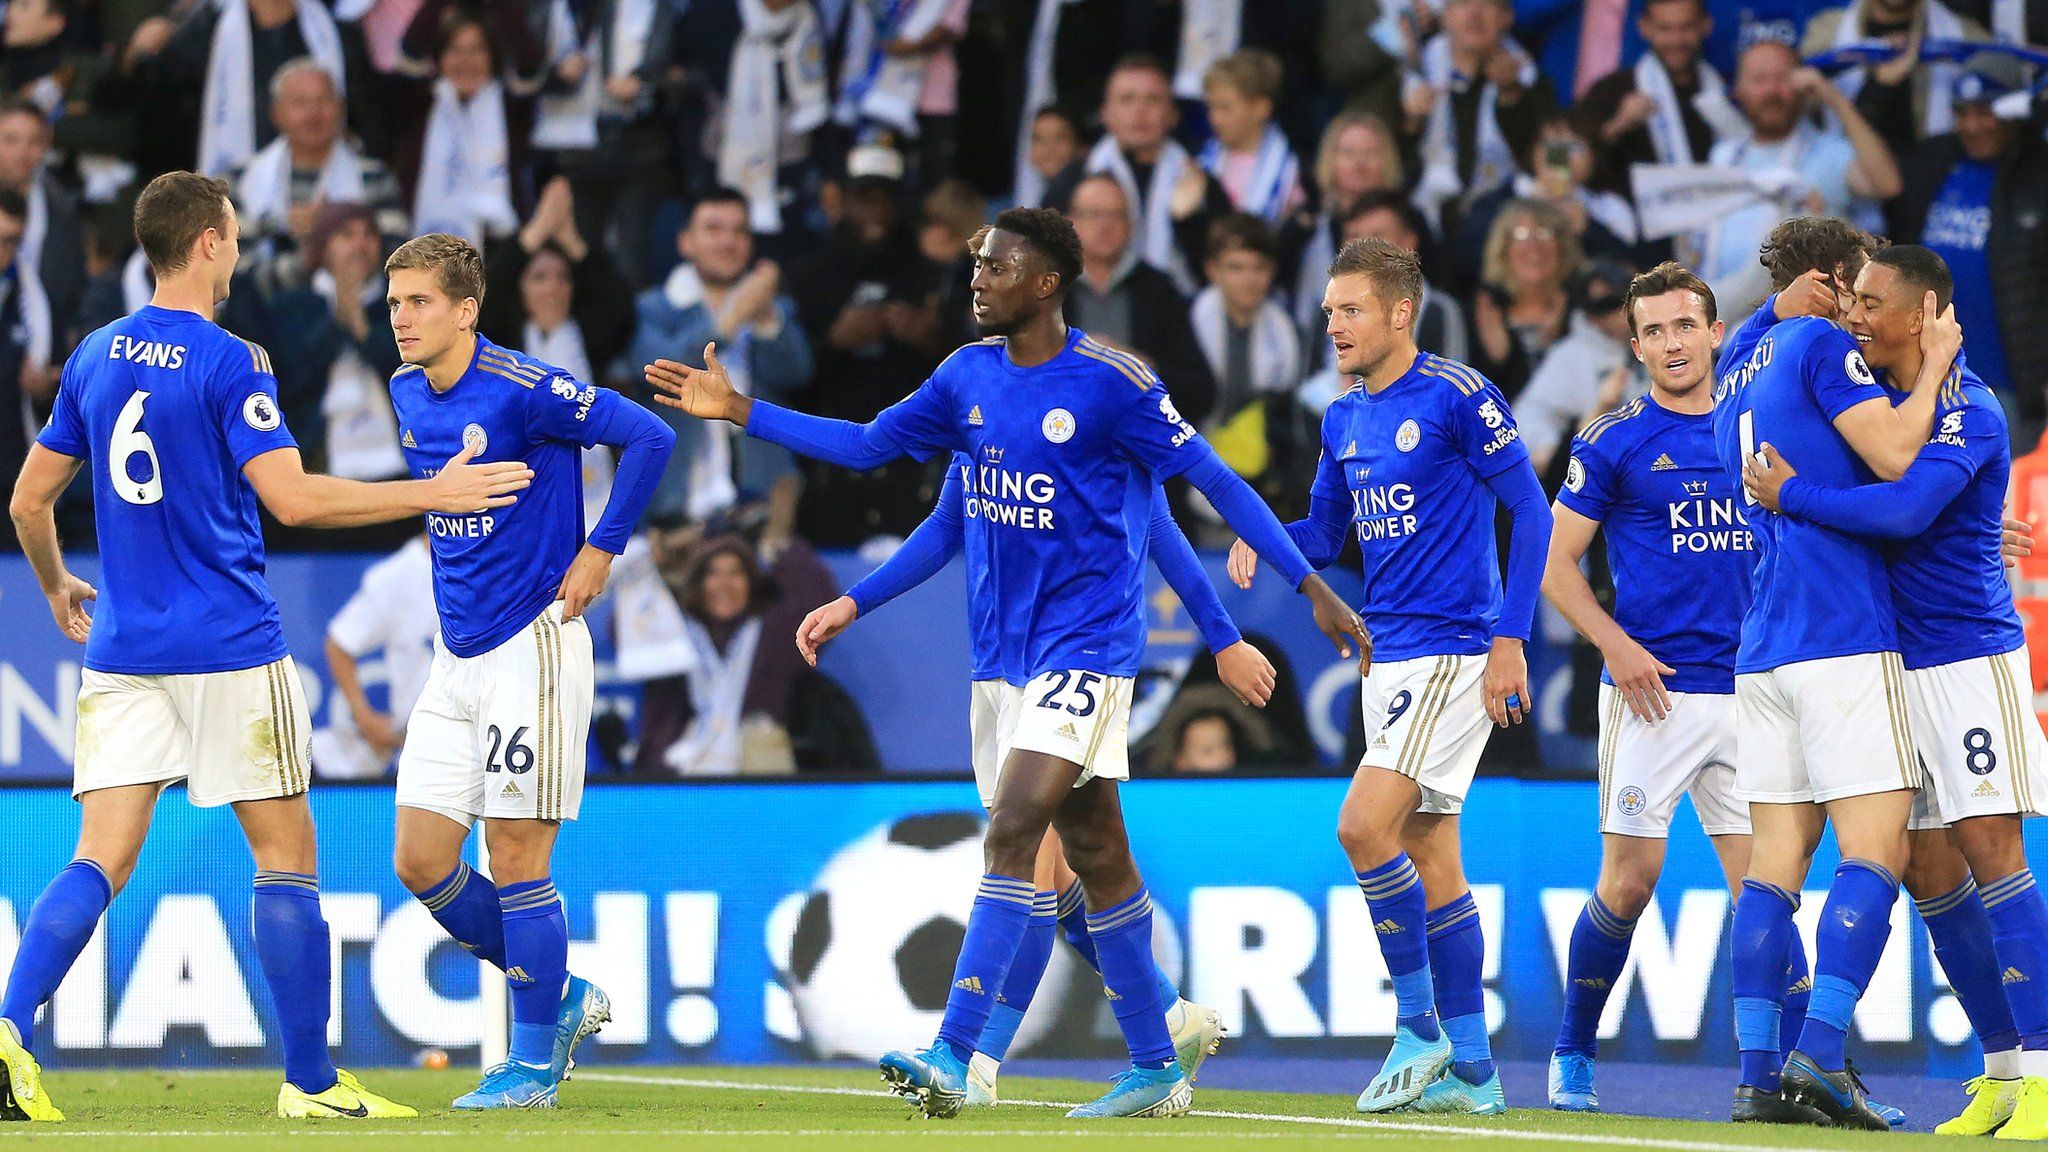 Leicester celebrate